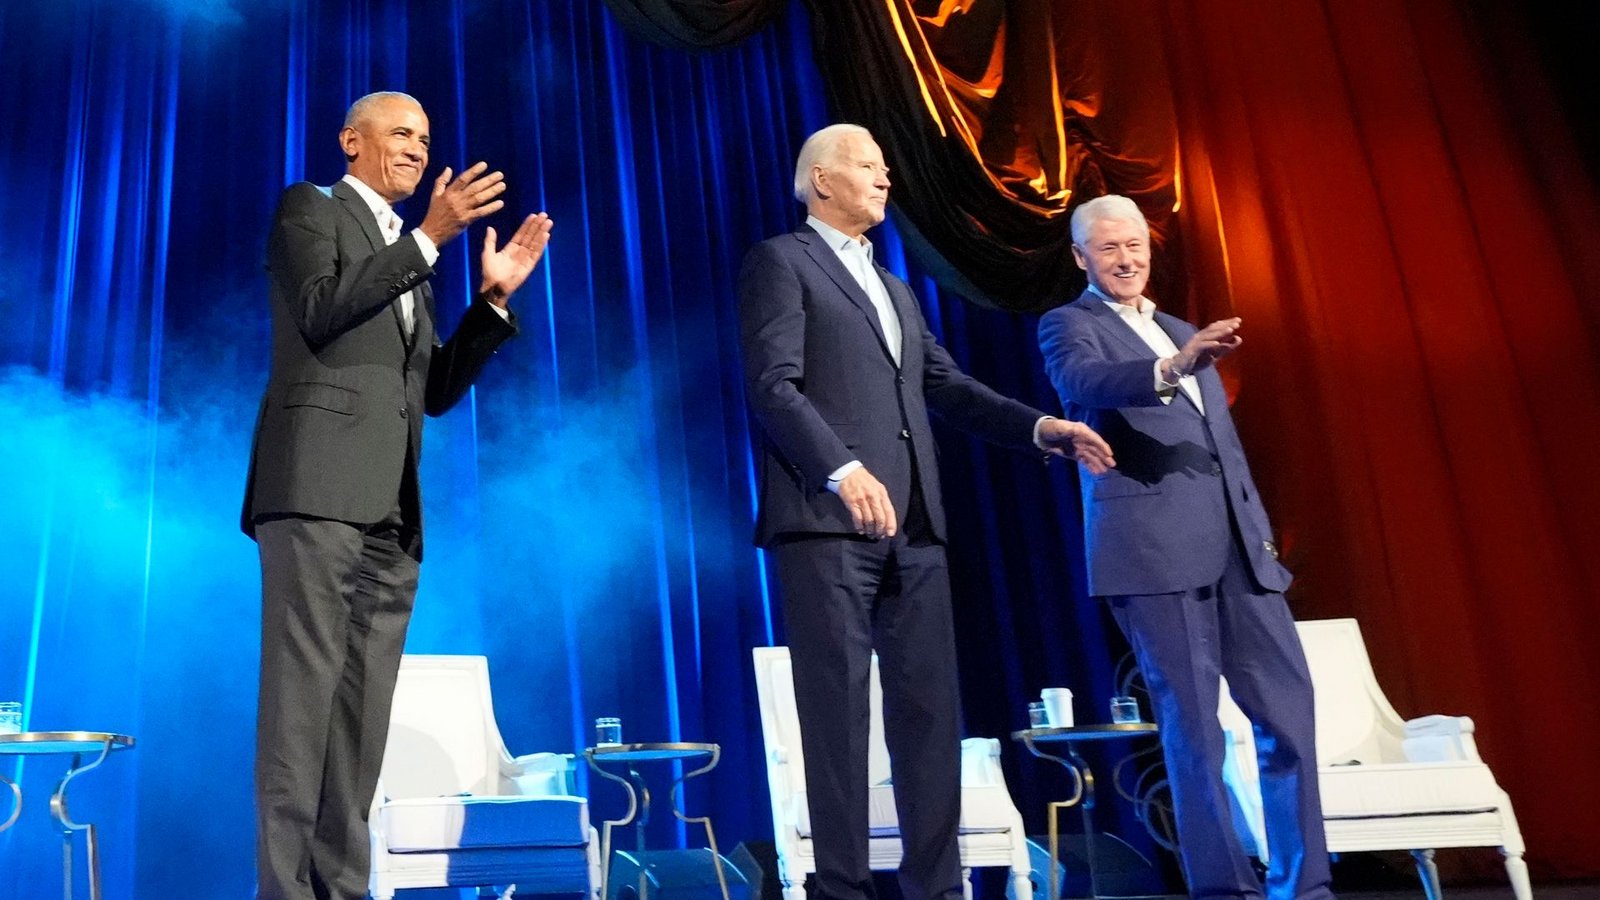 Zu der Veranstaltung mit Biden (M), Obama (l) und Clinton kamen mehrere Tausend Zuschauer.Foto: Alex Brandon/AP